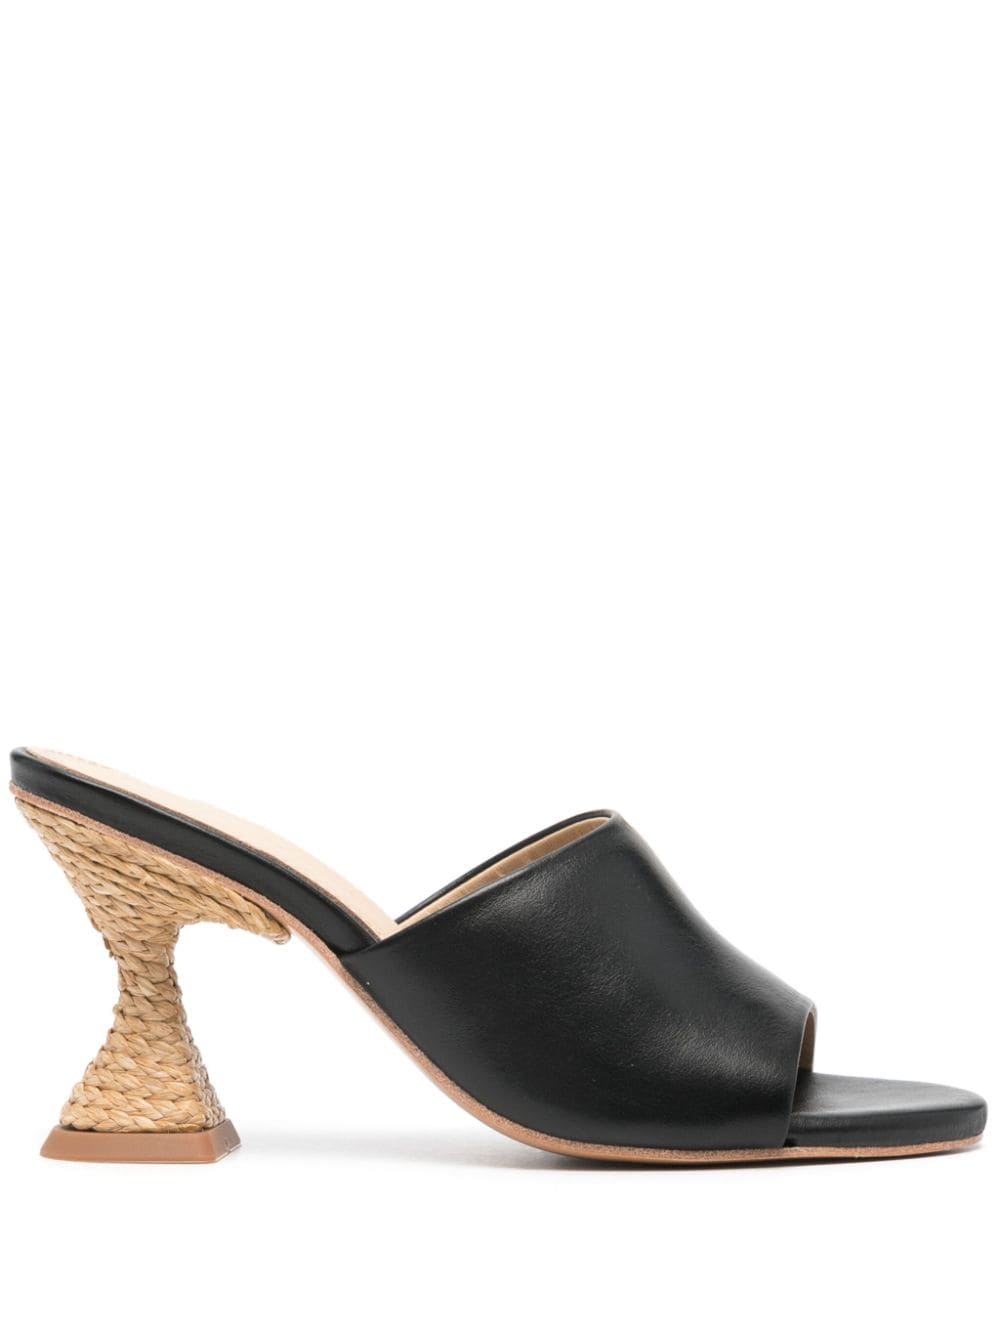 Paloma Barceló Brigite 90mm jute heel sandals - Black von Paloma Barceló